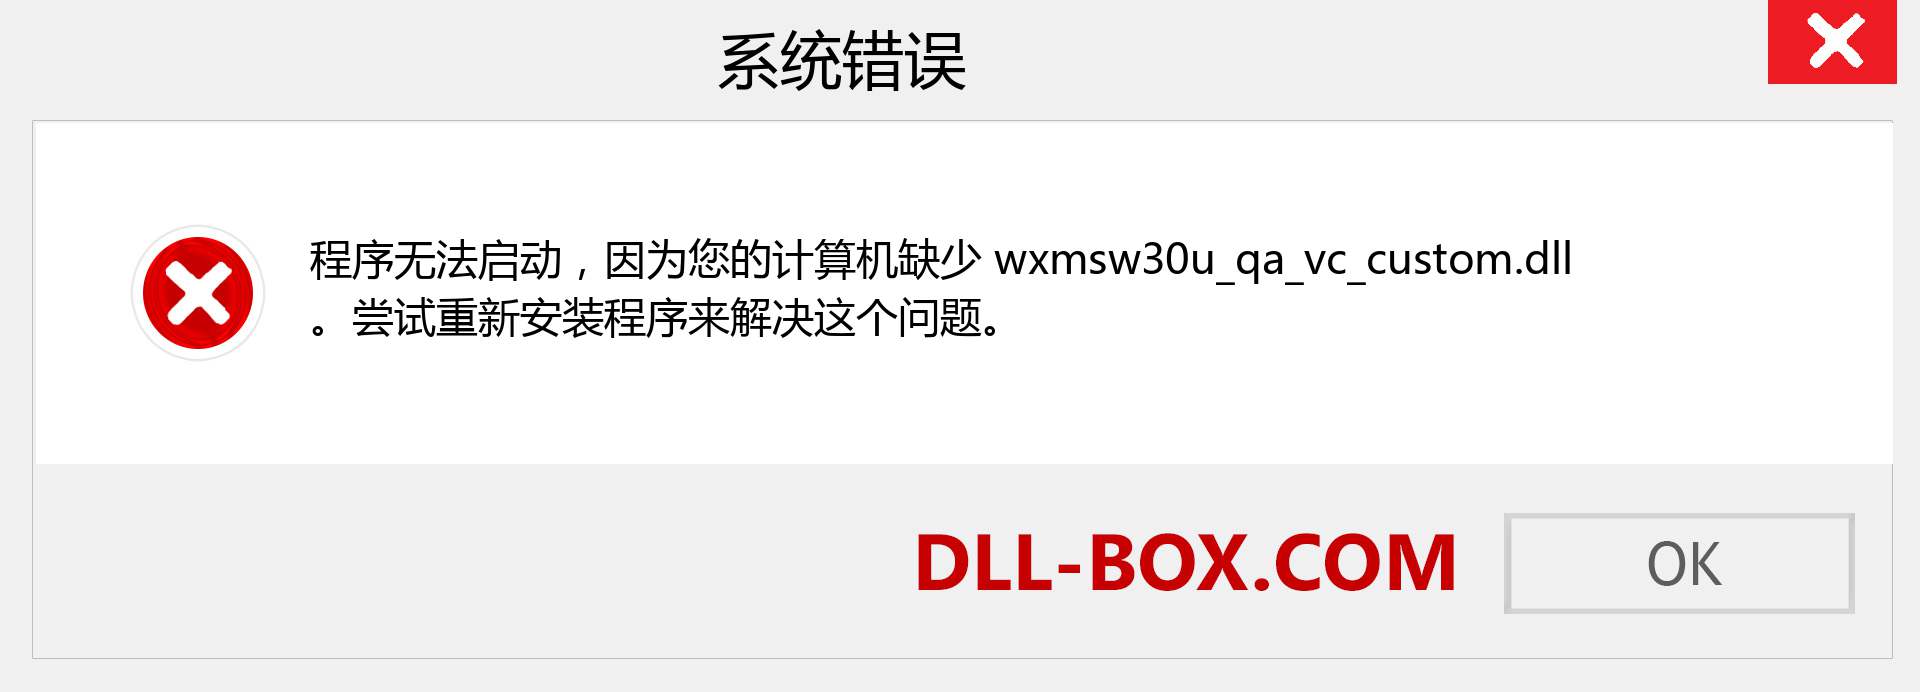 wxmsw30u_qa_vc_custom.dll 文件丢失？。 适用于 Windows 7、8、10 的下载 - 修复 Windows、照片、图像上的 wxmsw30u_qa_vc_custom dll 丢失错误